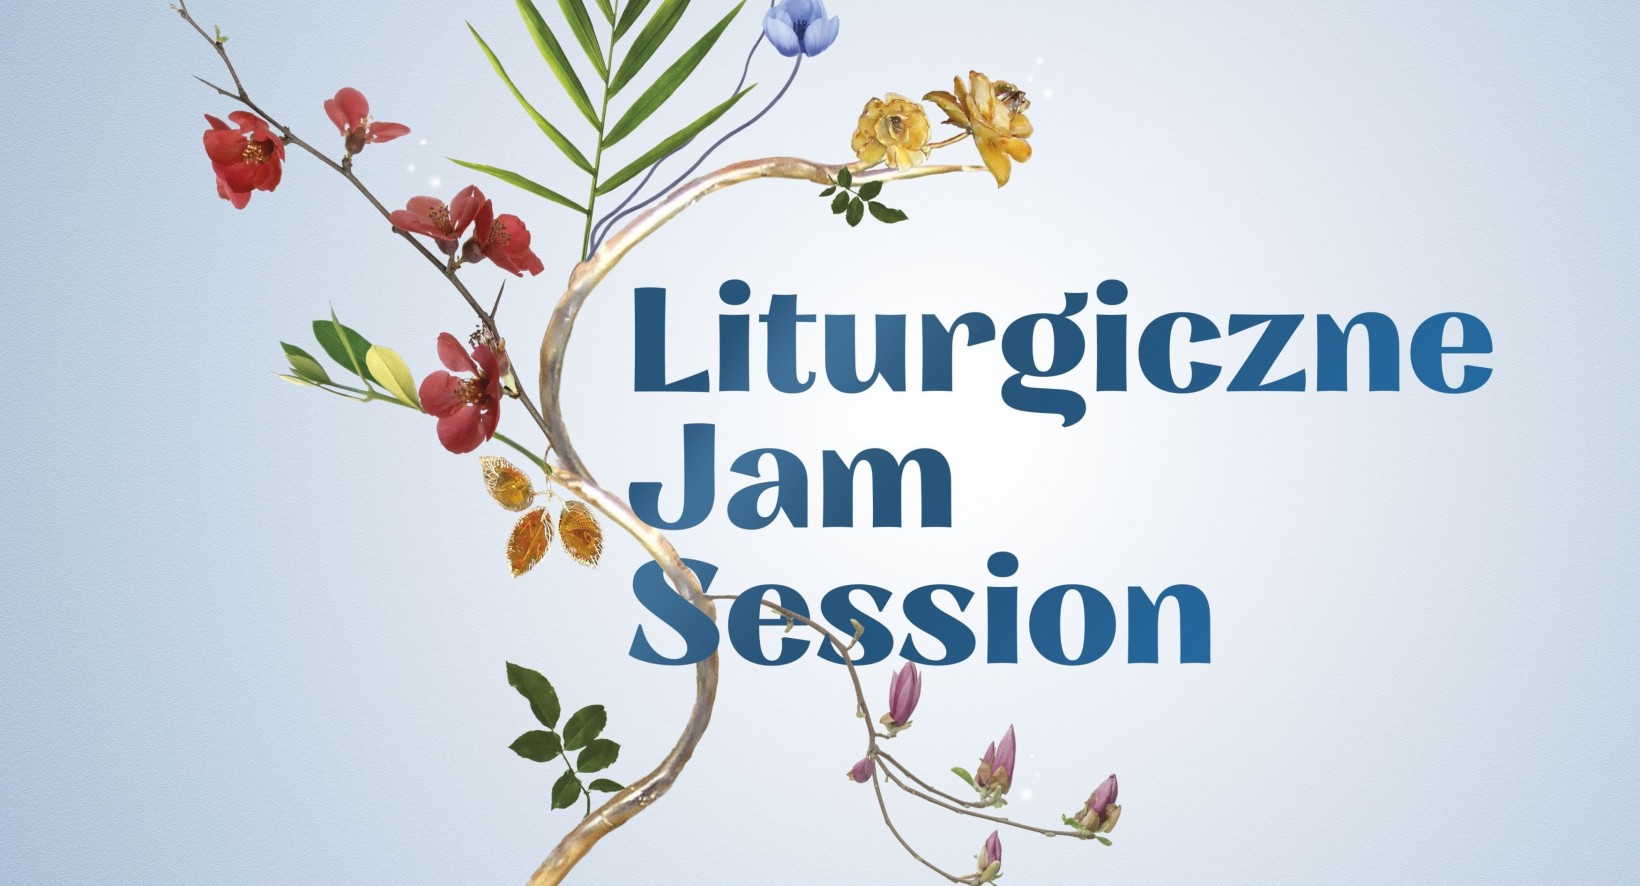 gałązka kolorowych kwiatów na bladoniebieskim tle, napis "liturgiczne jam session"